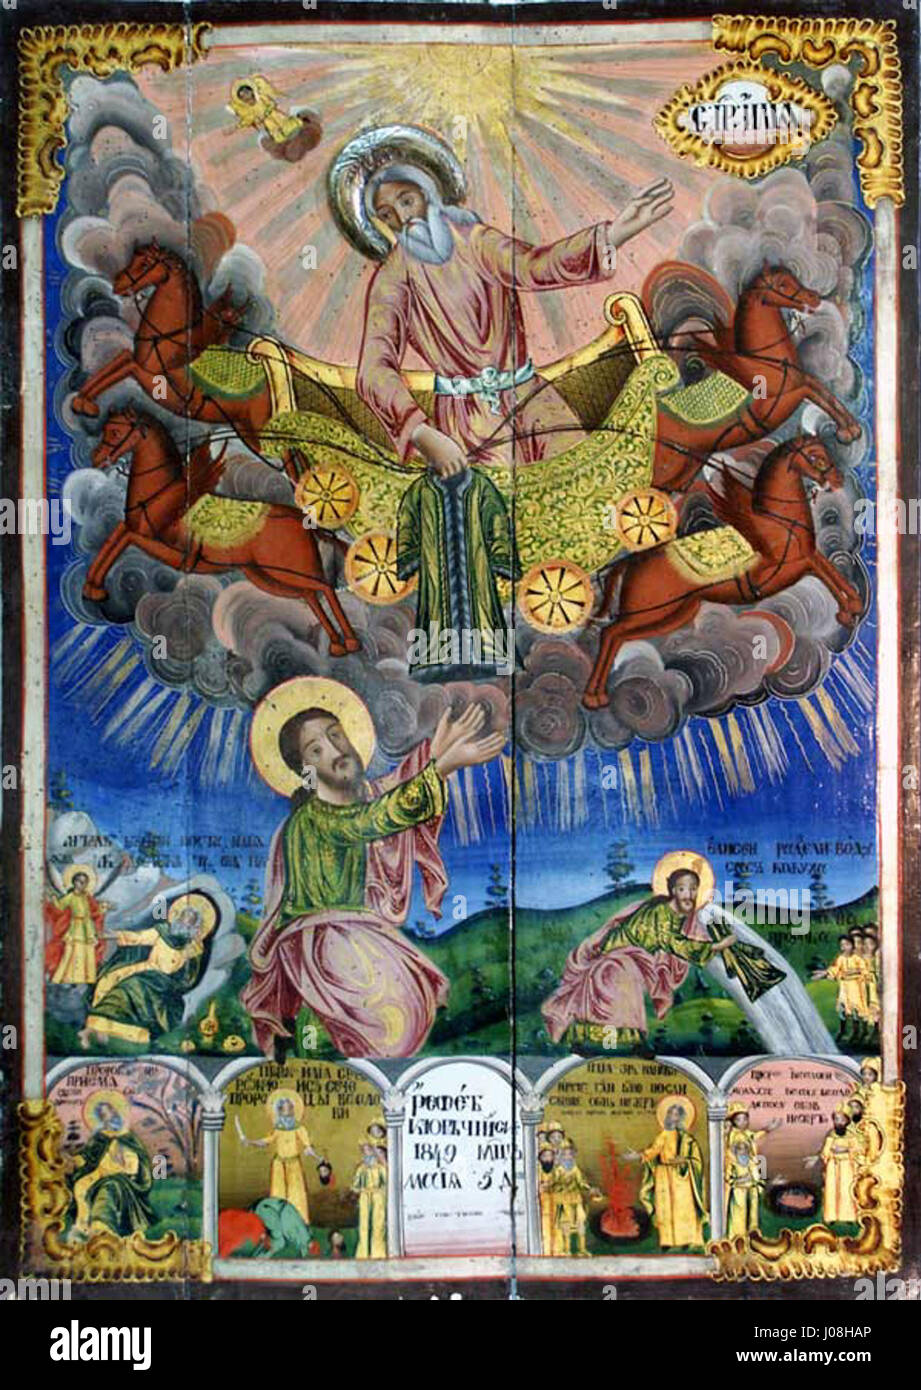 Илья пророк Вознесение на небо на колеснице